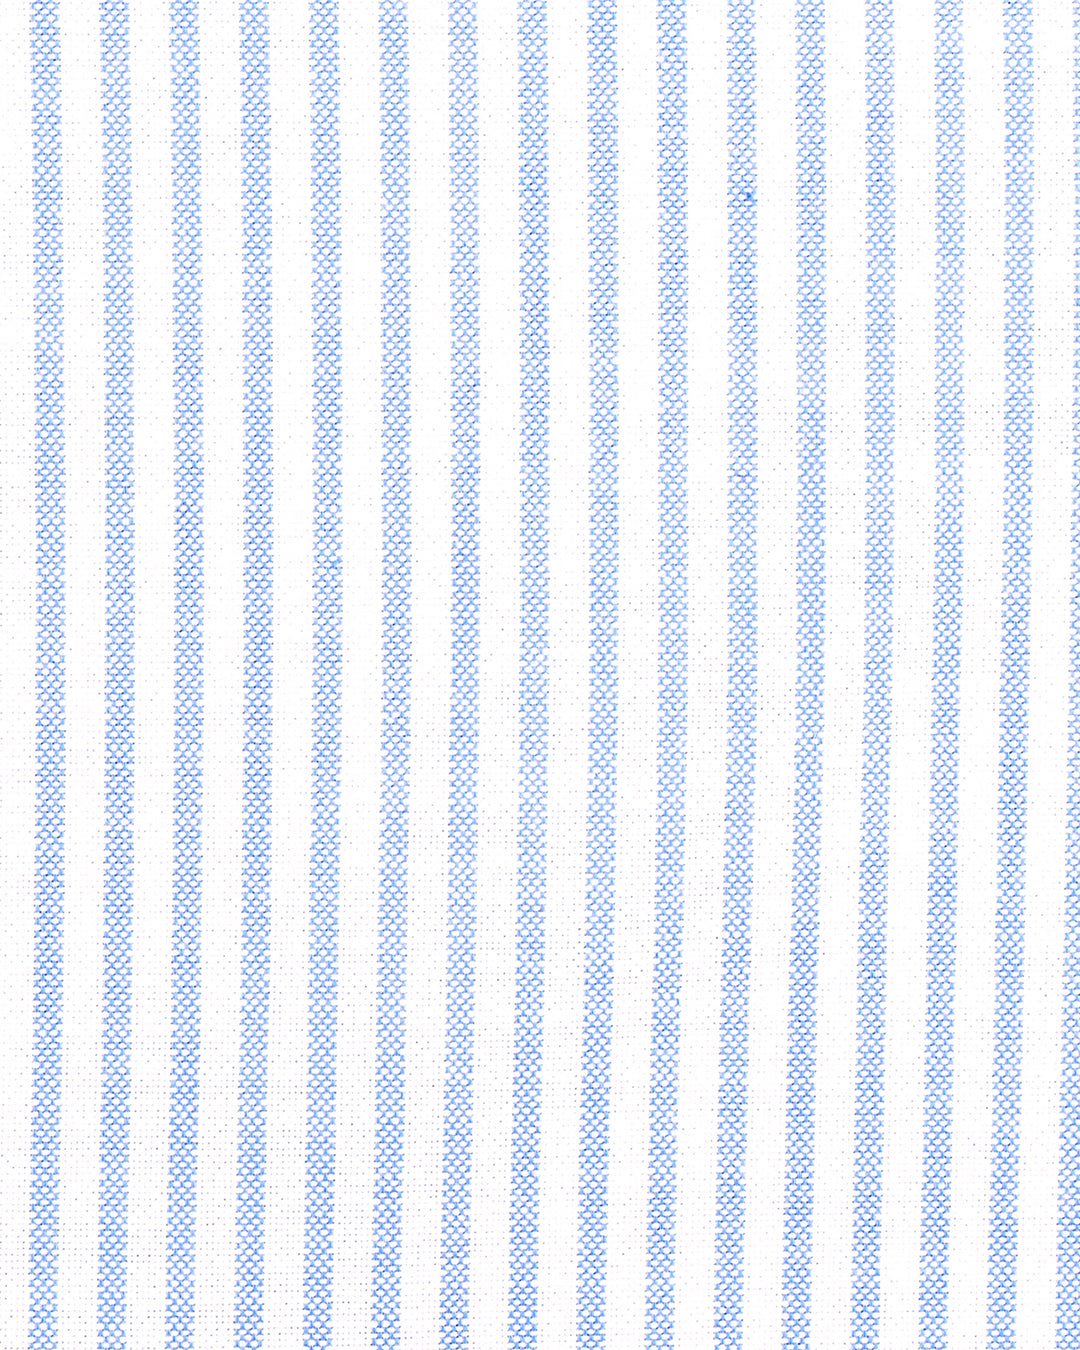 Blue Stripes On Textured White